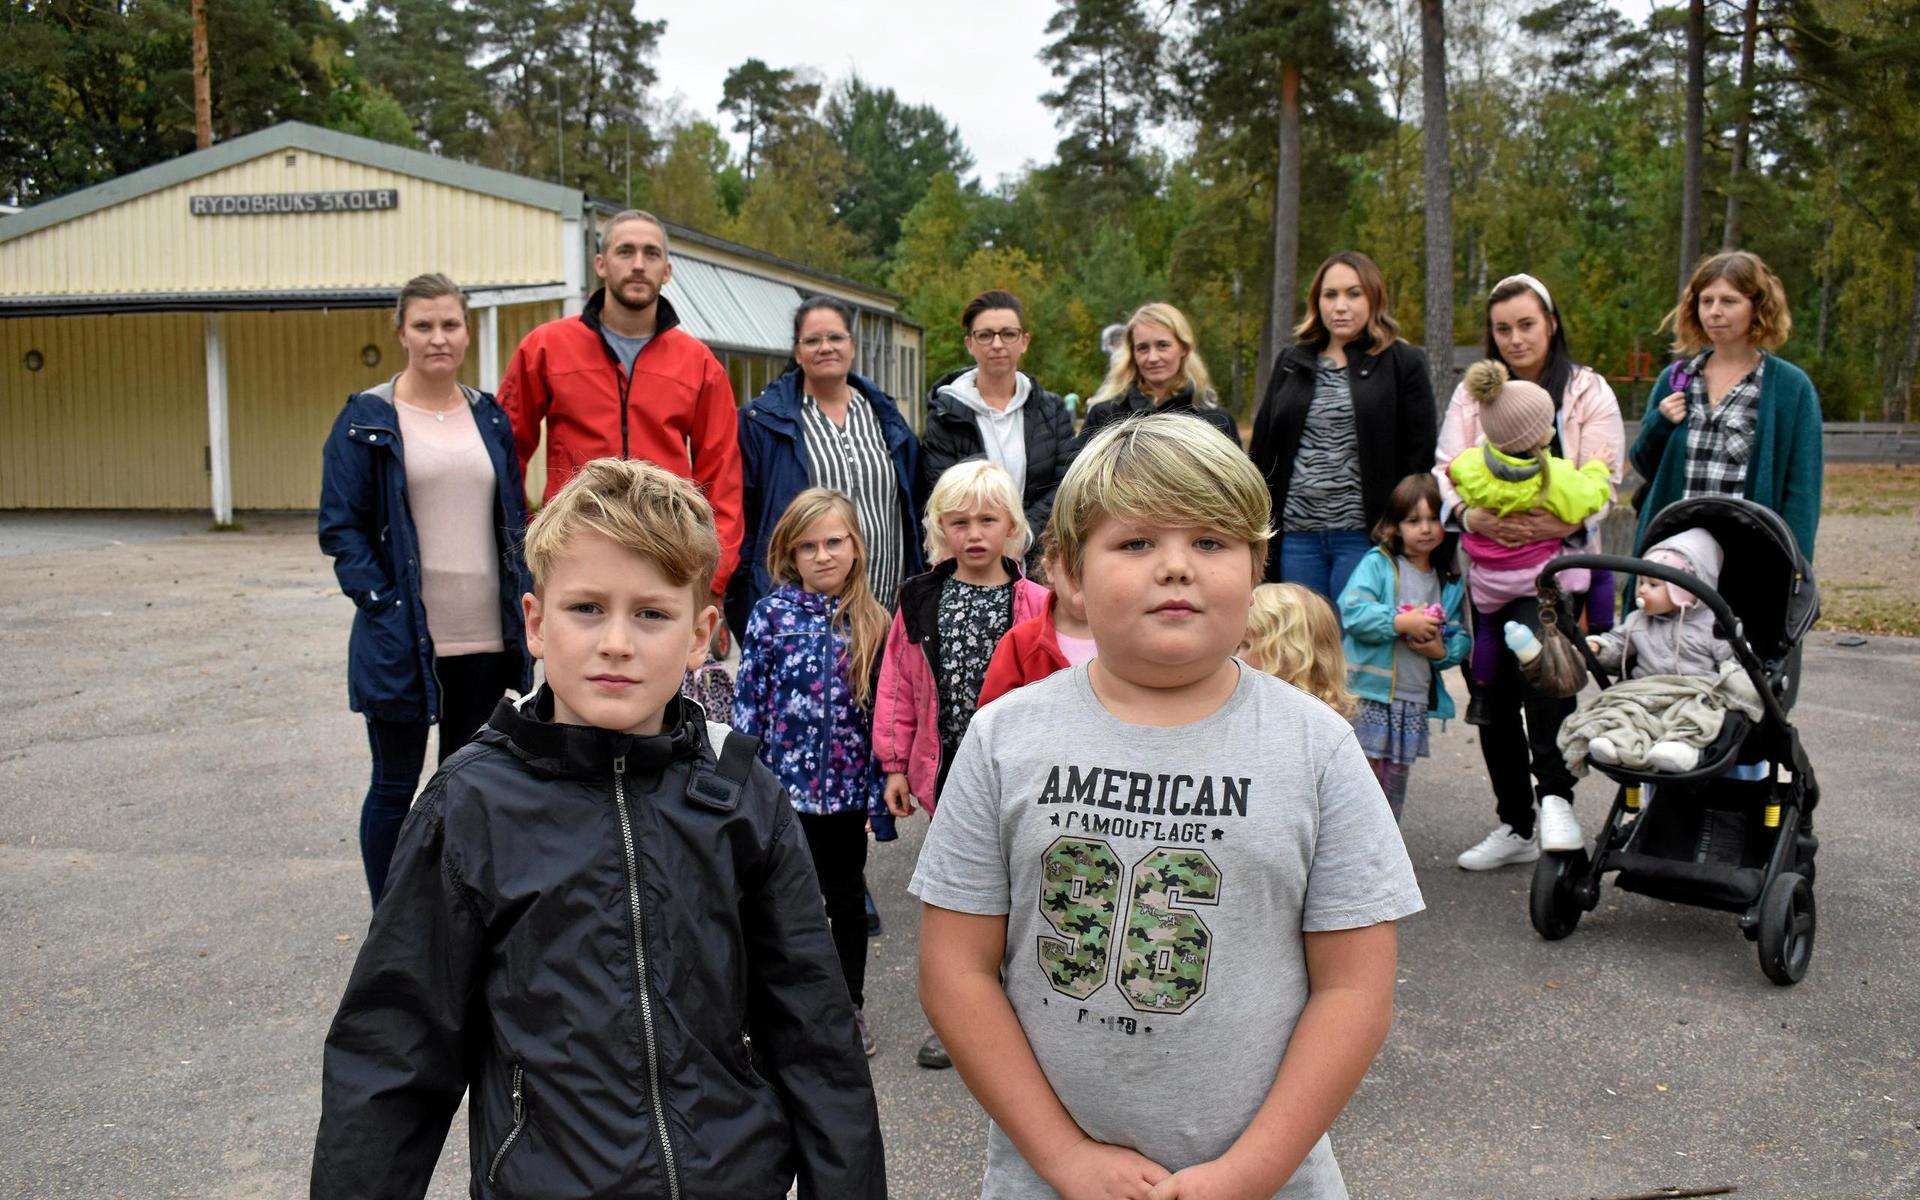 1 oktober. Centerpartiet föreslår en nedläggning av Rydöbruks skola. Detta vållar starka reaktioner i den lilla byn och barnfamiljerna drar igång en egen namninsamling. 765 namnunderskrifter överlämnas senare till oppositionsrådet Anna Roos (C).